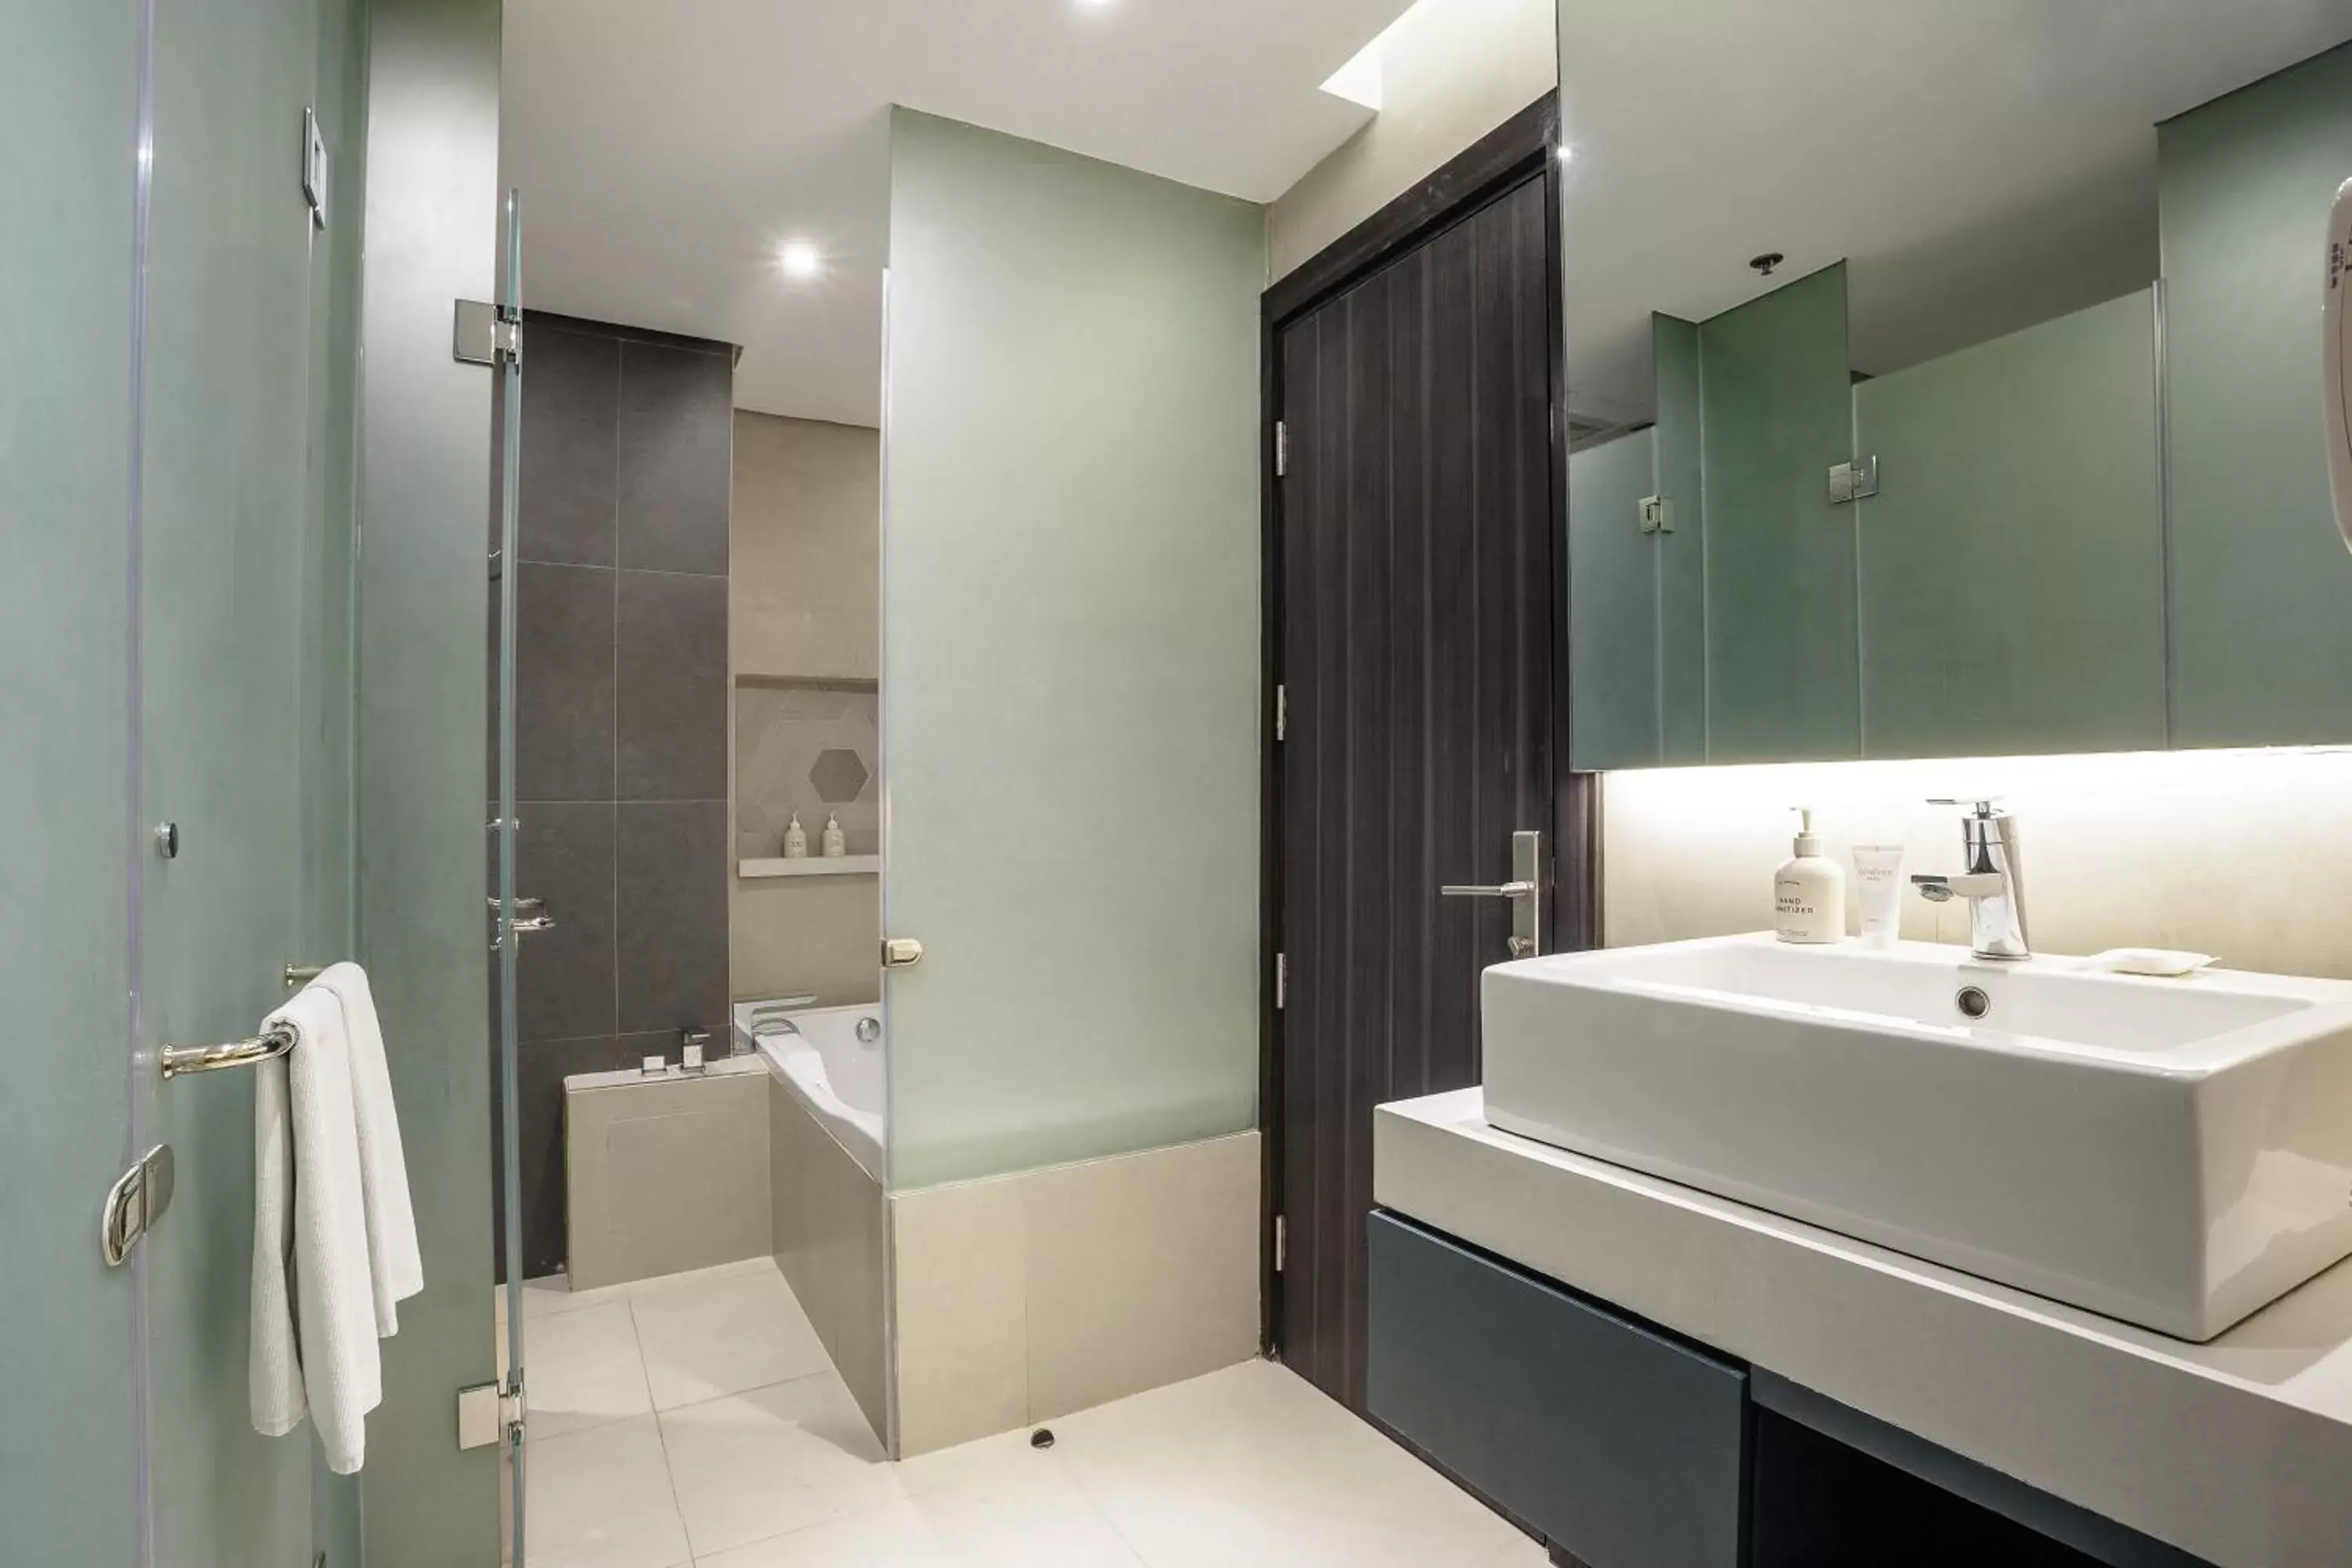 Bathroom in Summit Galleria Cebu - Multiple Use Hotel